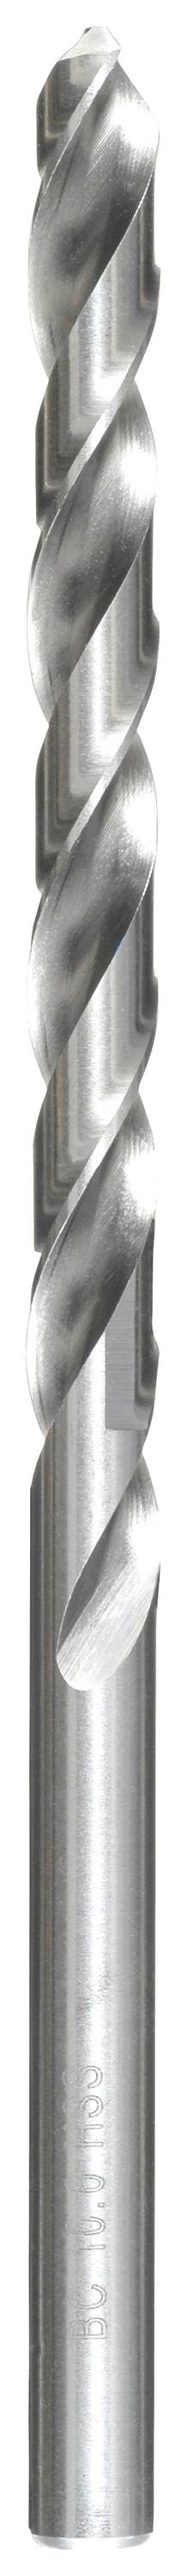 KWB 217042 HSS Spiralbohrer 1 Stück 4.2 mm Gesamtlänge 119 mm DIN 340 Zahnkranzbohrfutter 1 St.